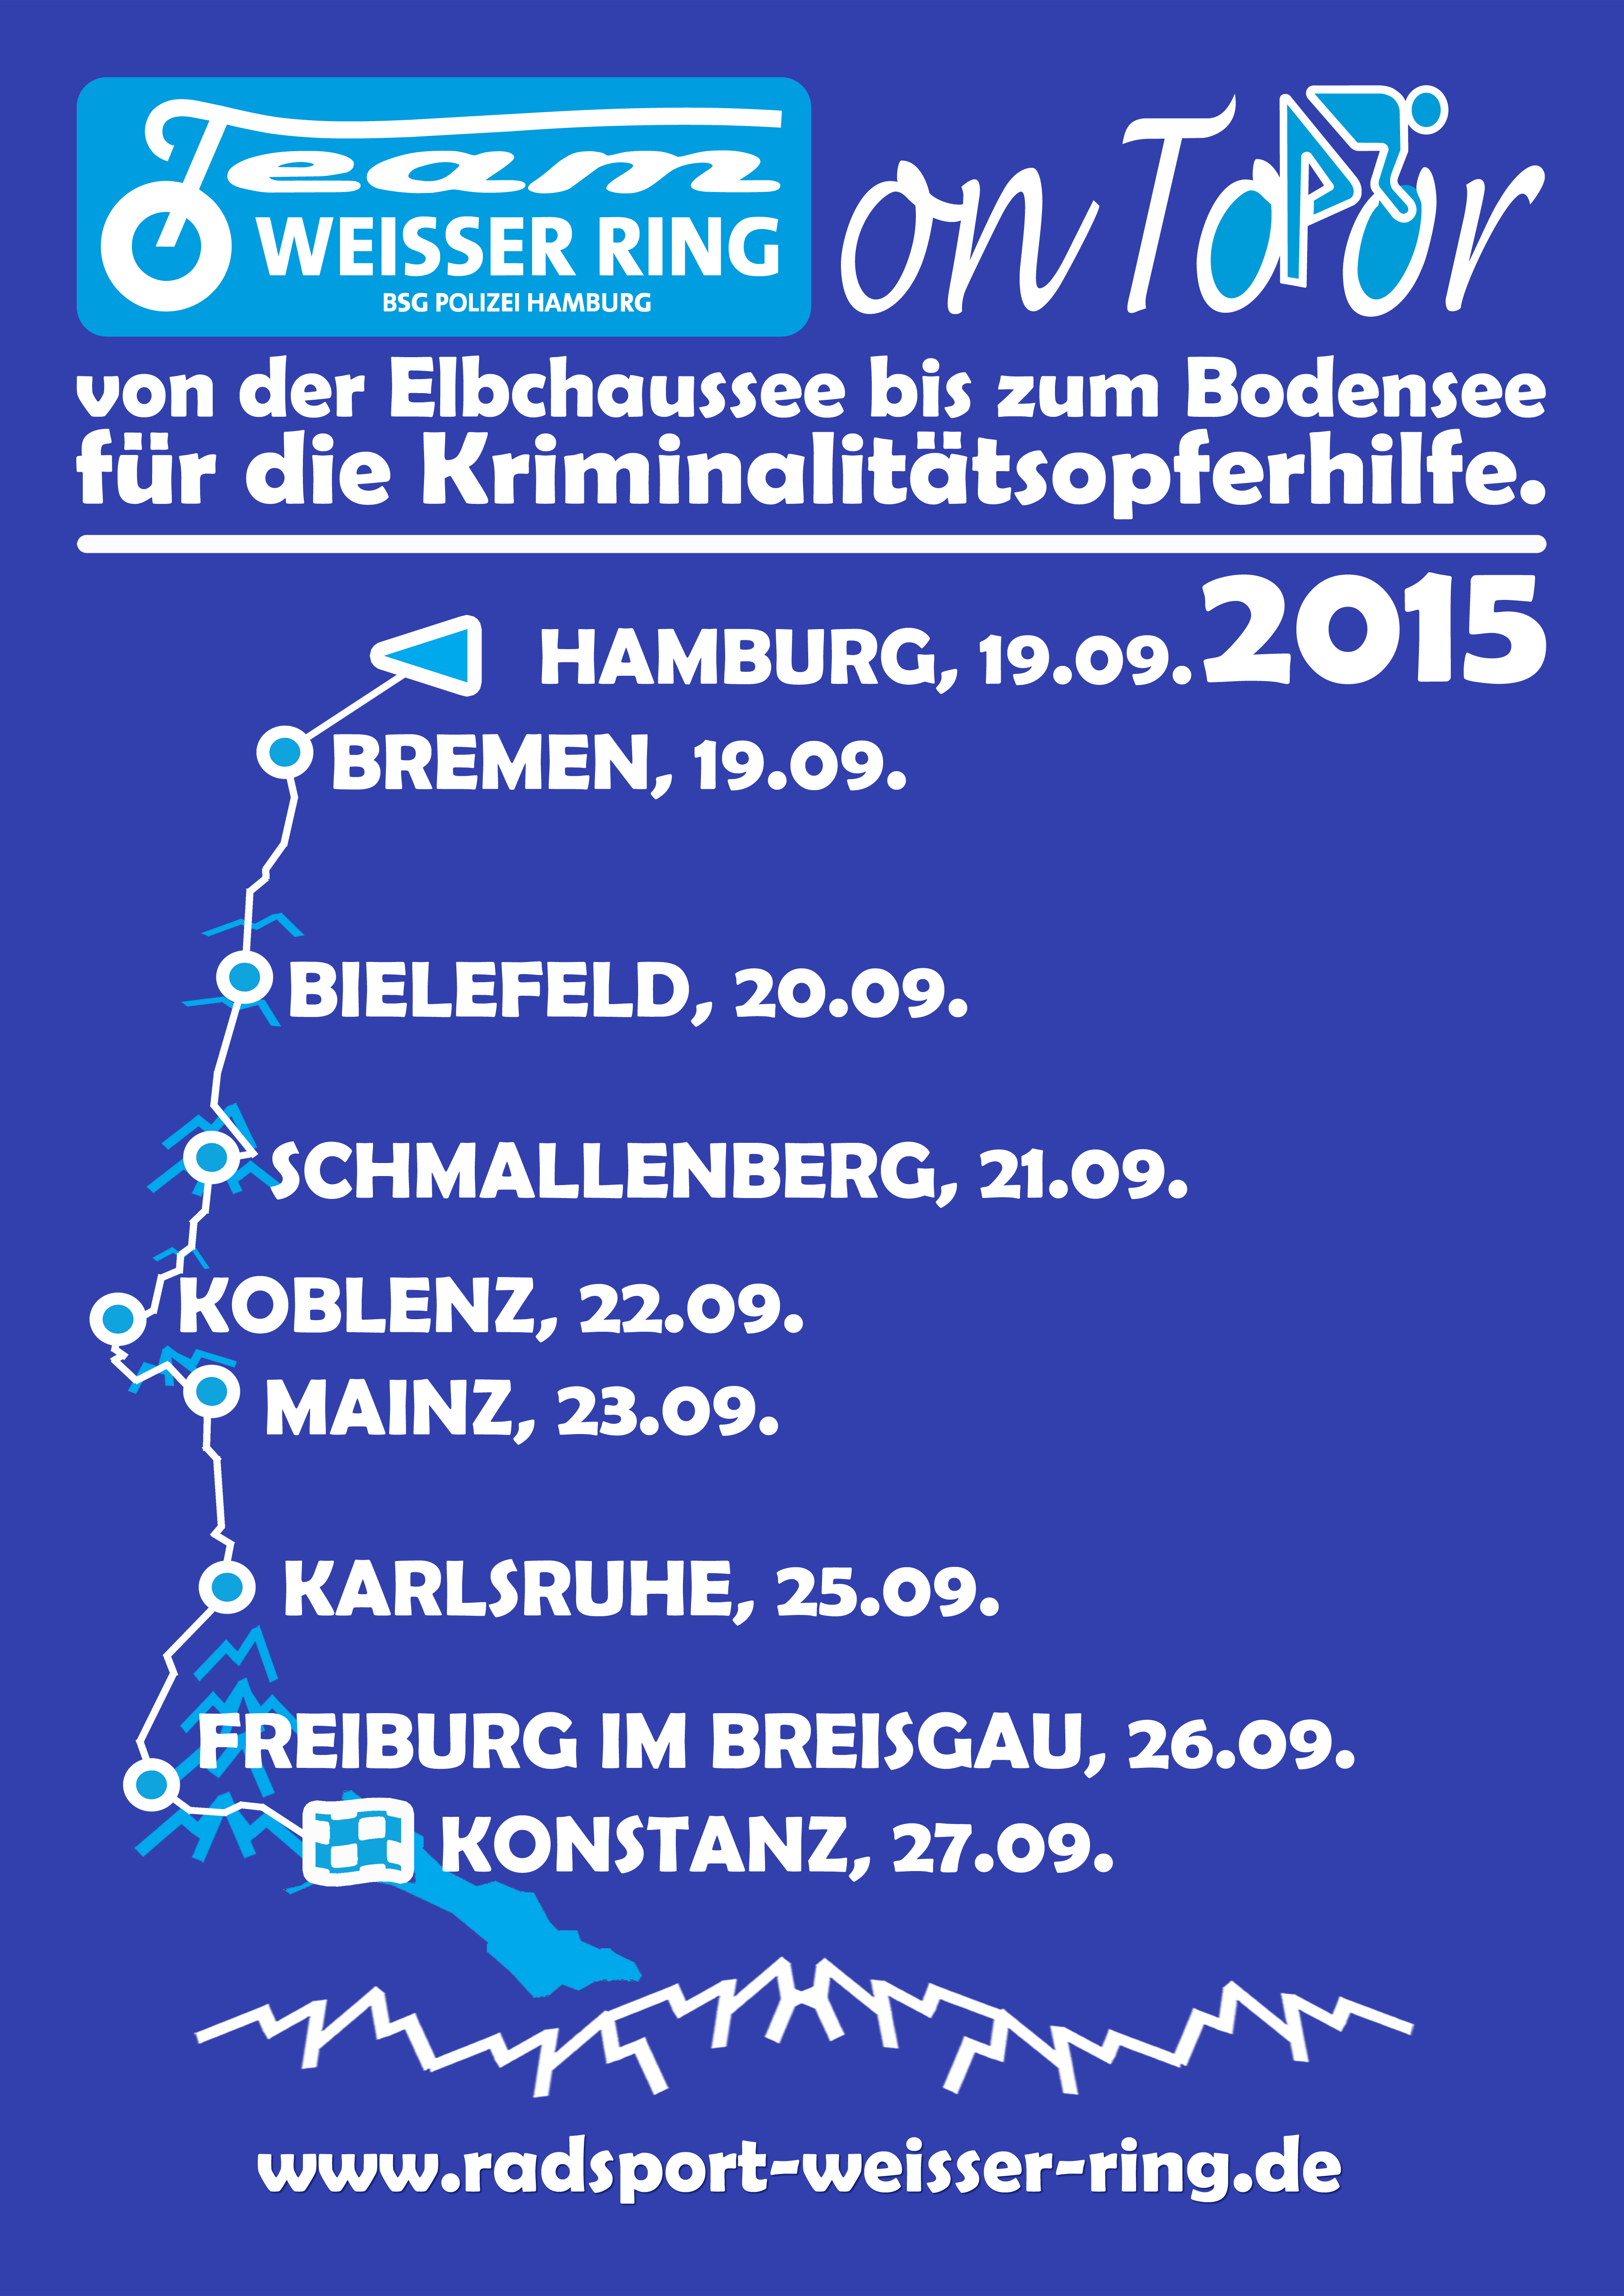 TShirt Team Weisser Ring on Tour 2015 Back Hintergrund blau